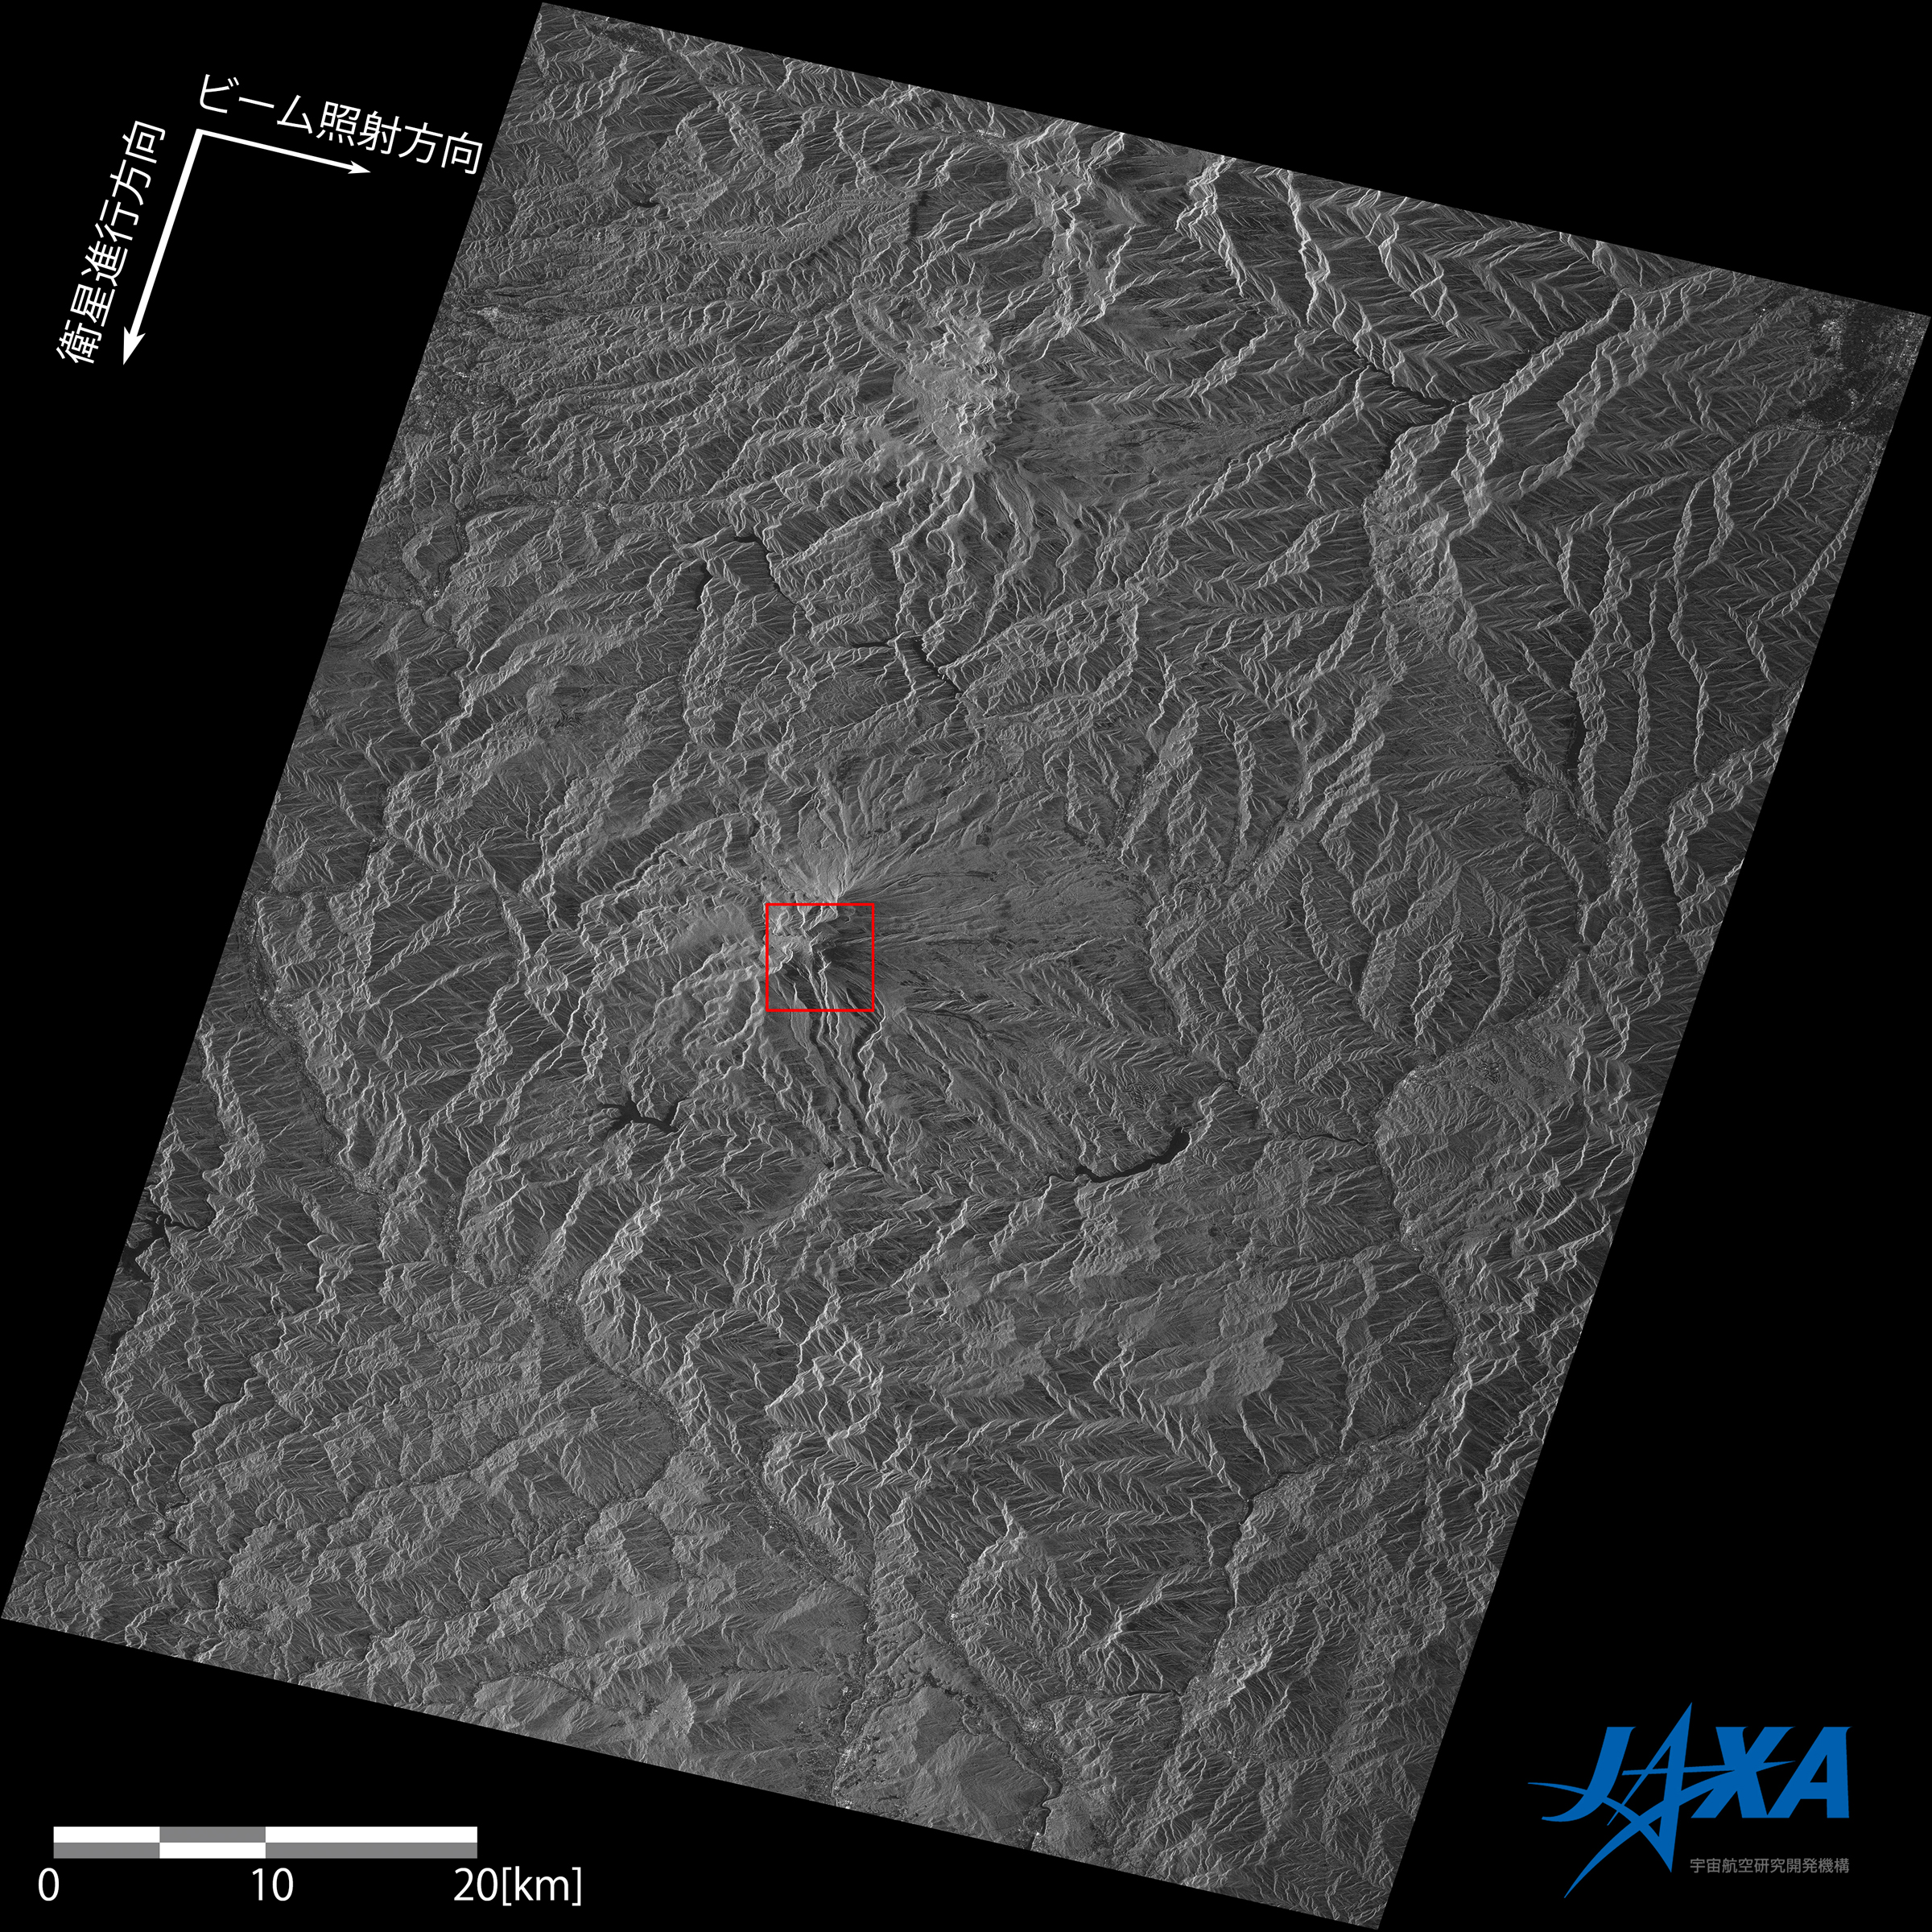 図2: 御嶽山付近のPALSAR-2画像